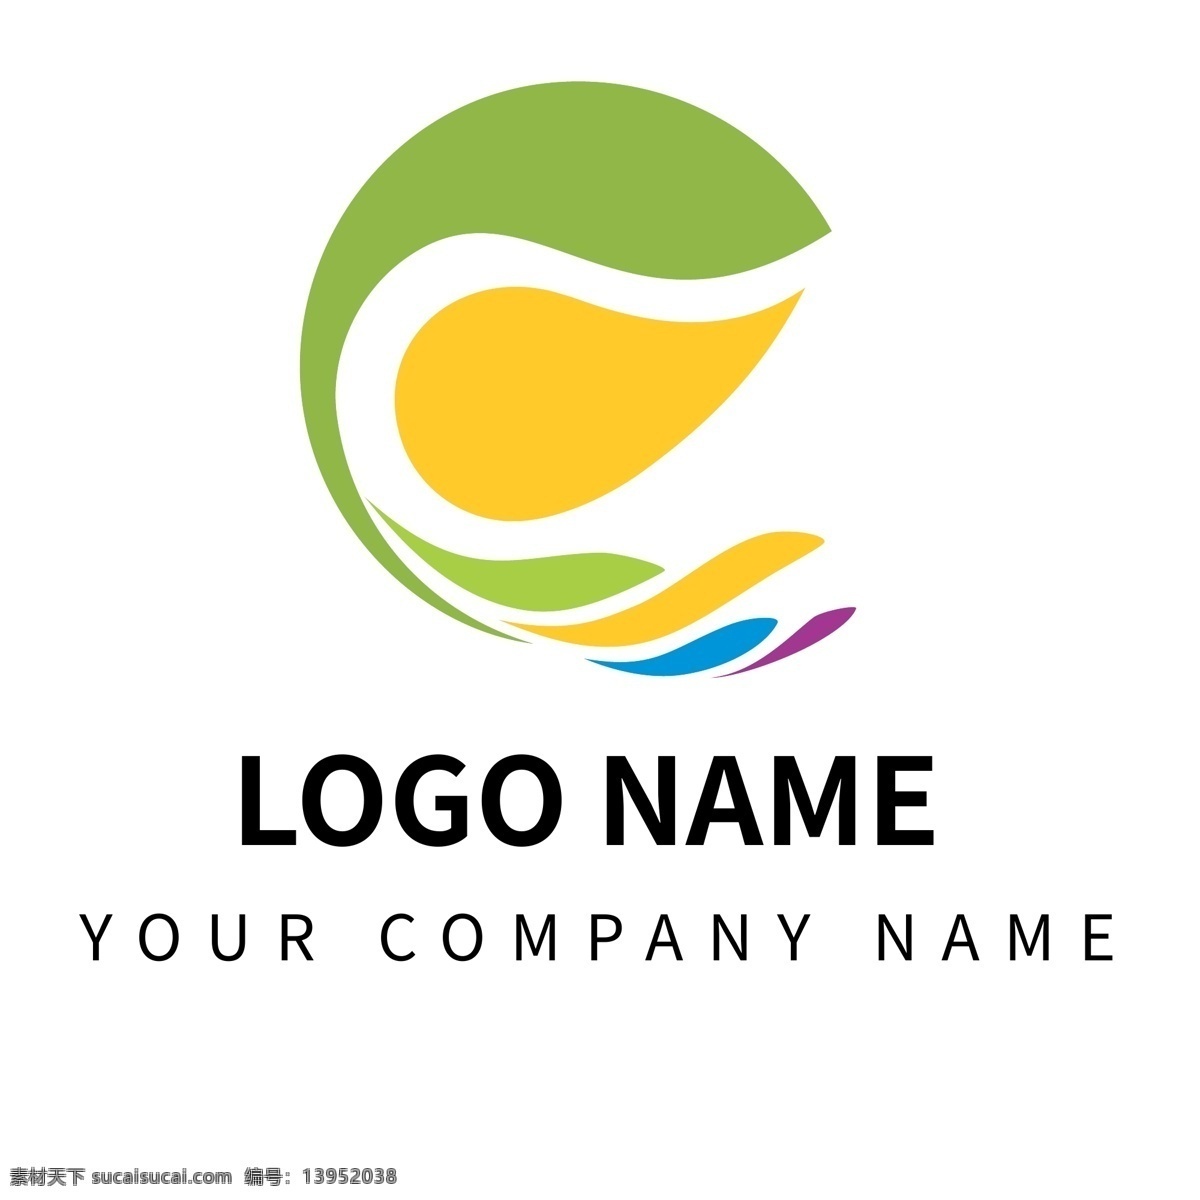 矢量 格式 圆形 环保 水滴 包裹 logo logo动画 动态logo 环保logo 环保行业 标志 标识 icon 公益 logo设计